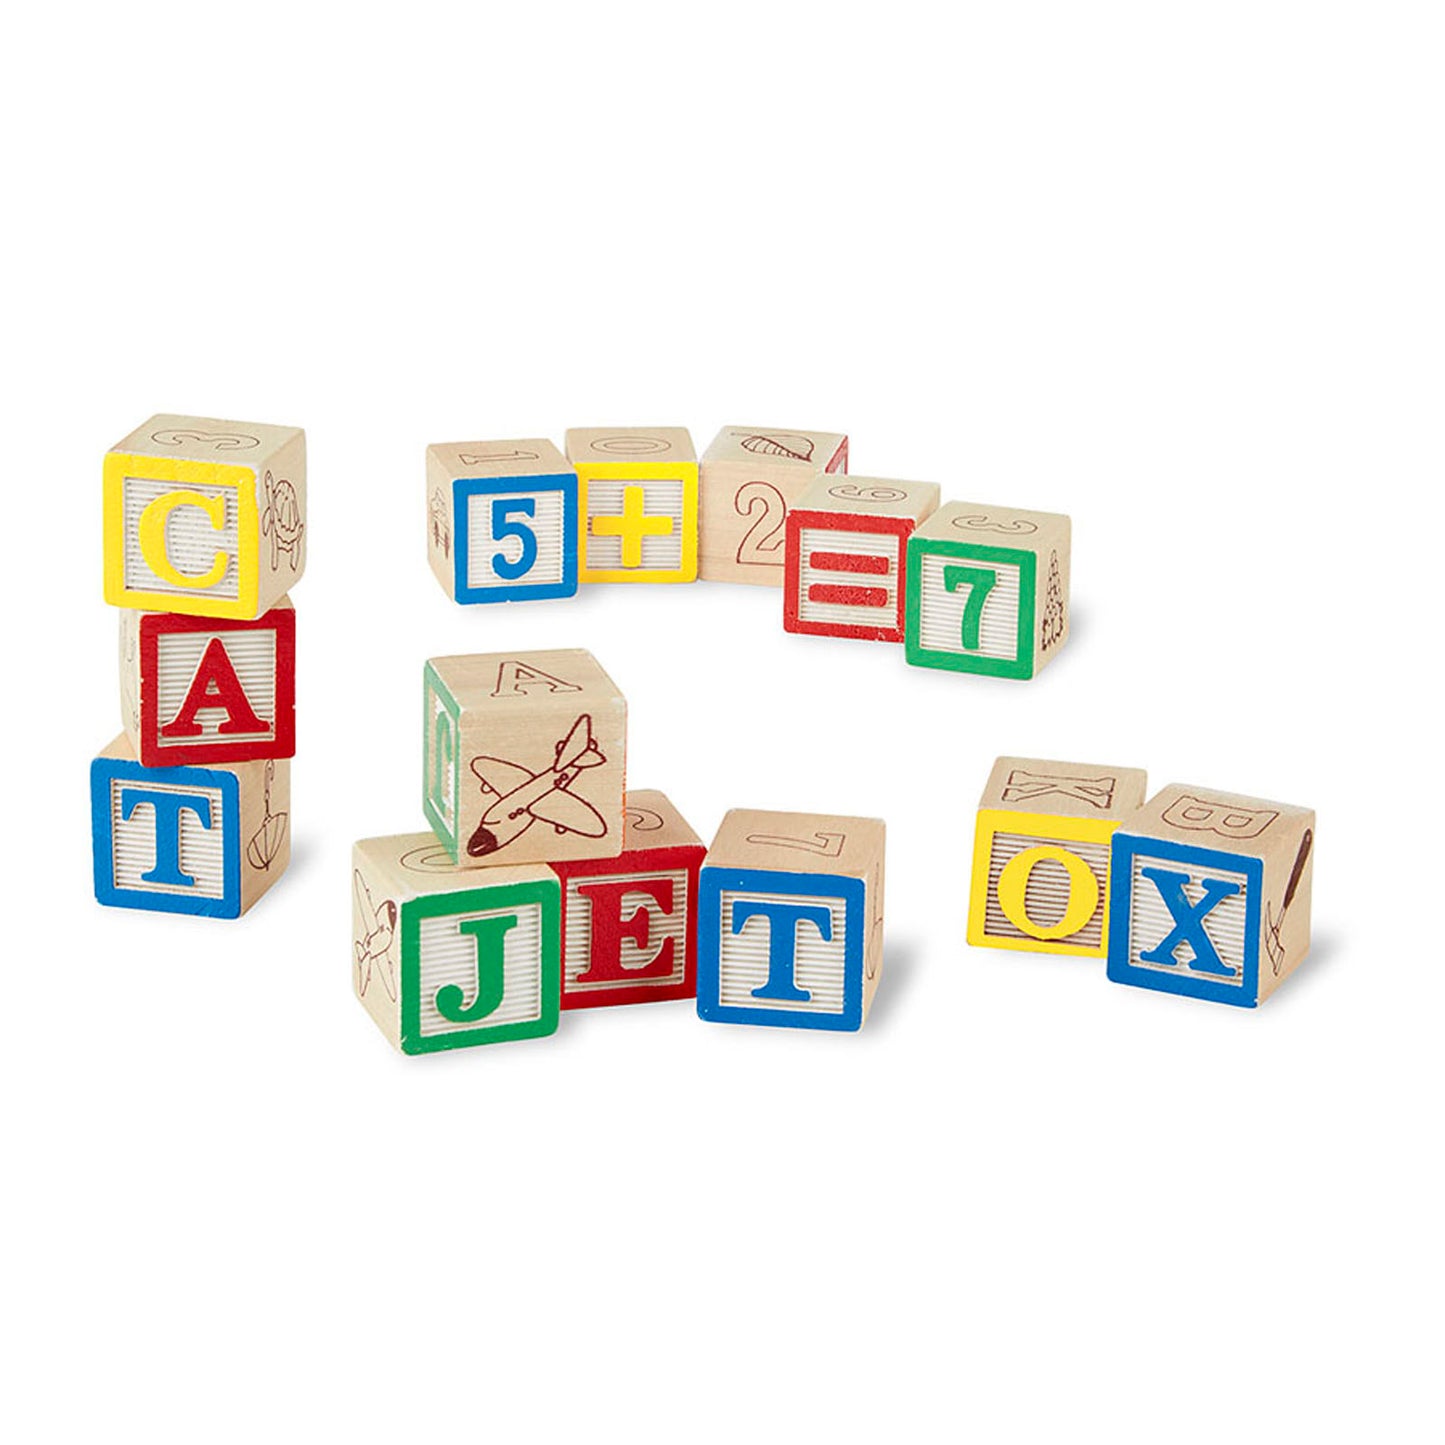 Melissa & Doug Wooden ABC/123 Block Set - 50 Piece Educational Toy